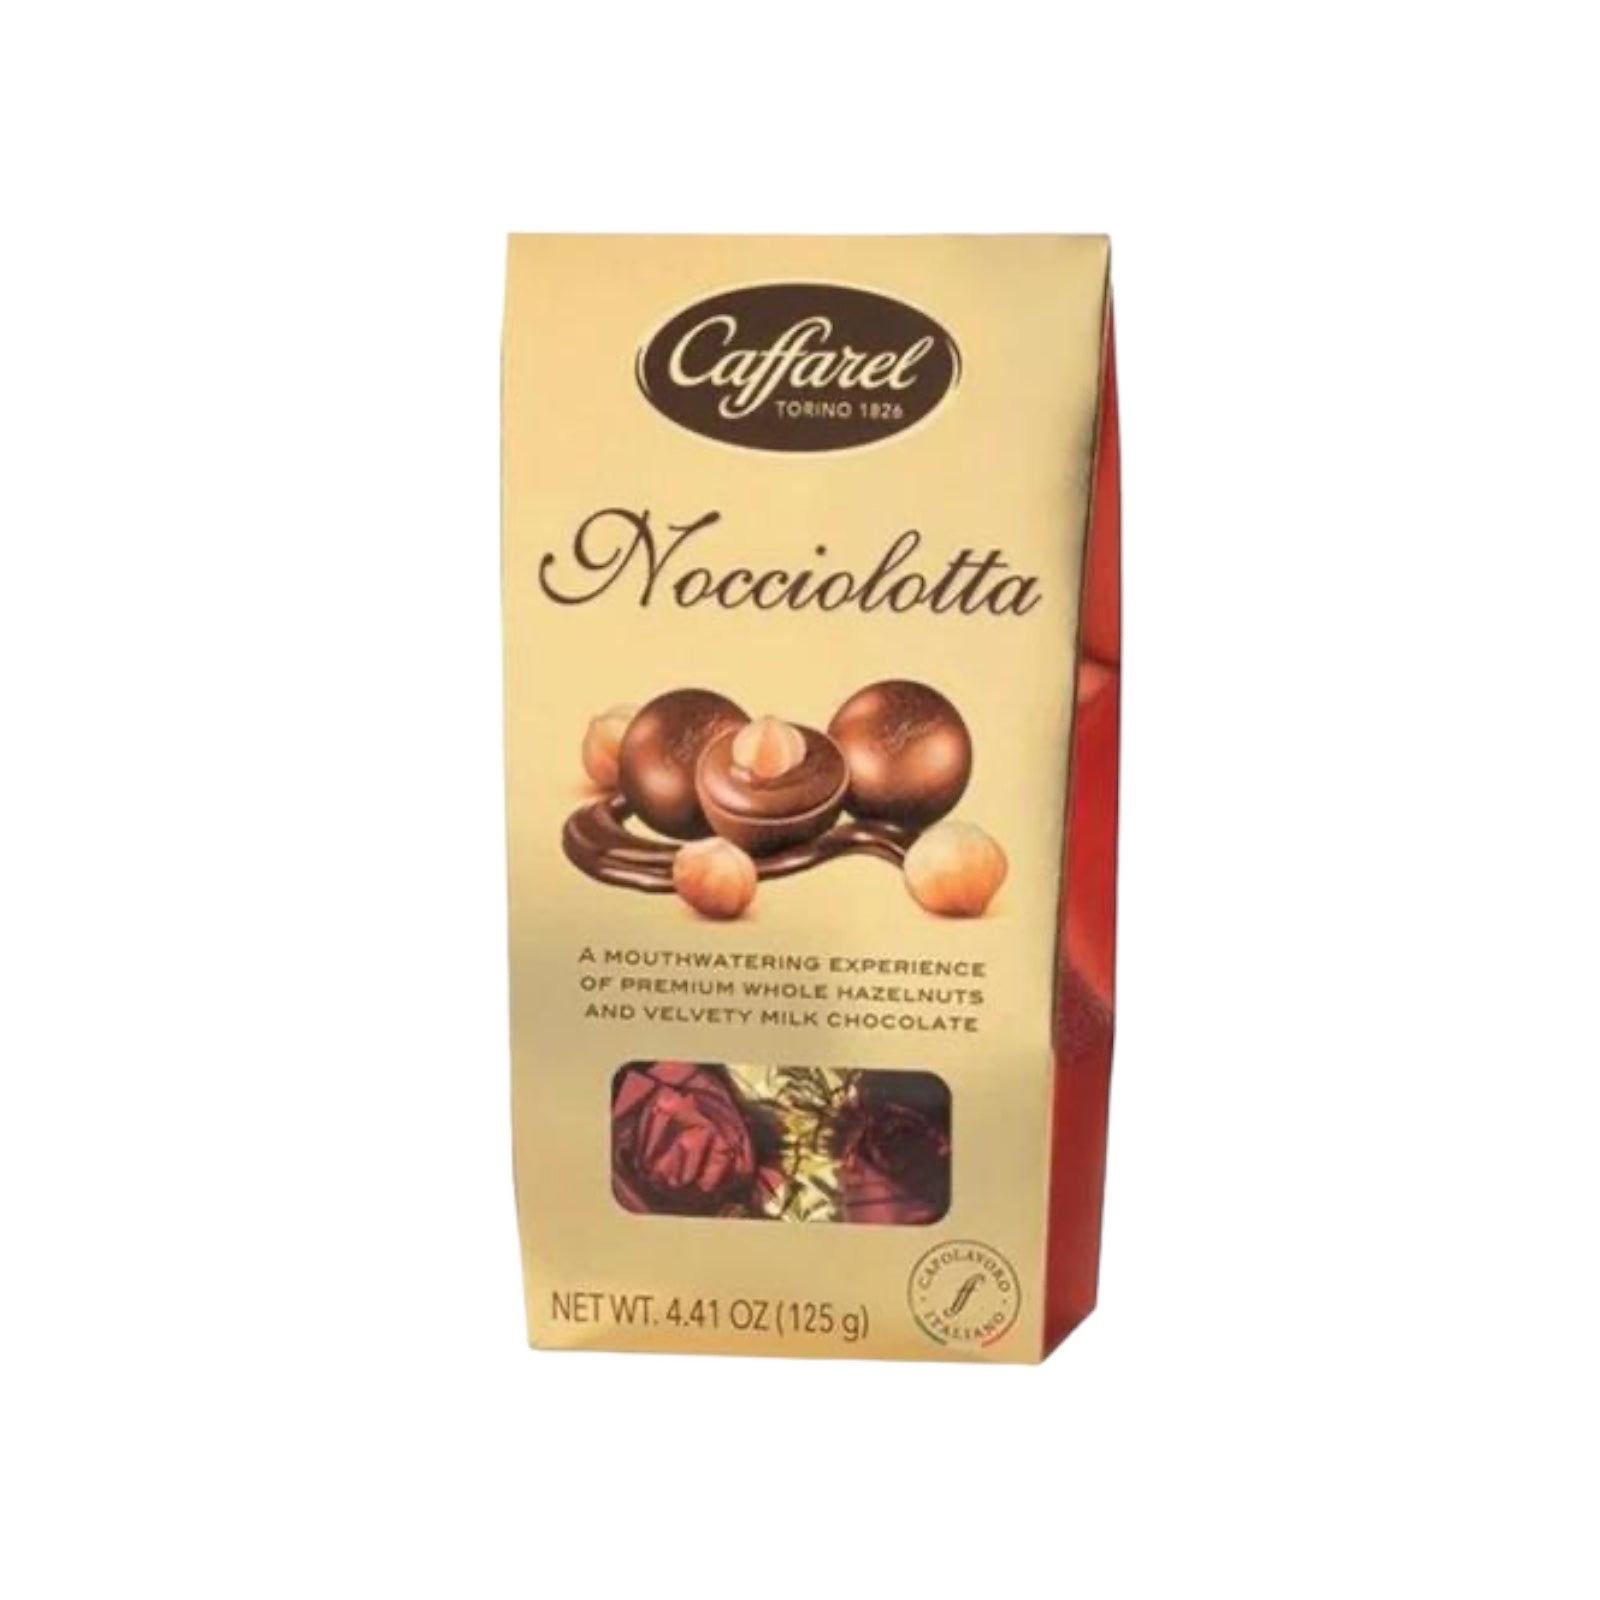 Caffarel Nocciolotta 
With Milk Chocolate 125g